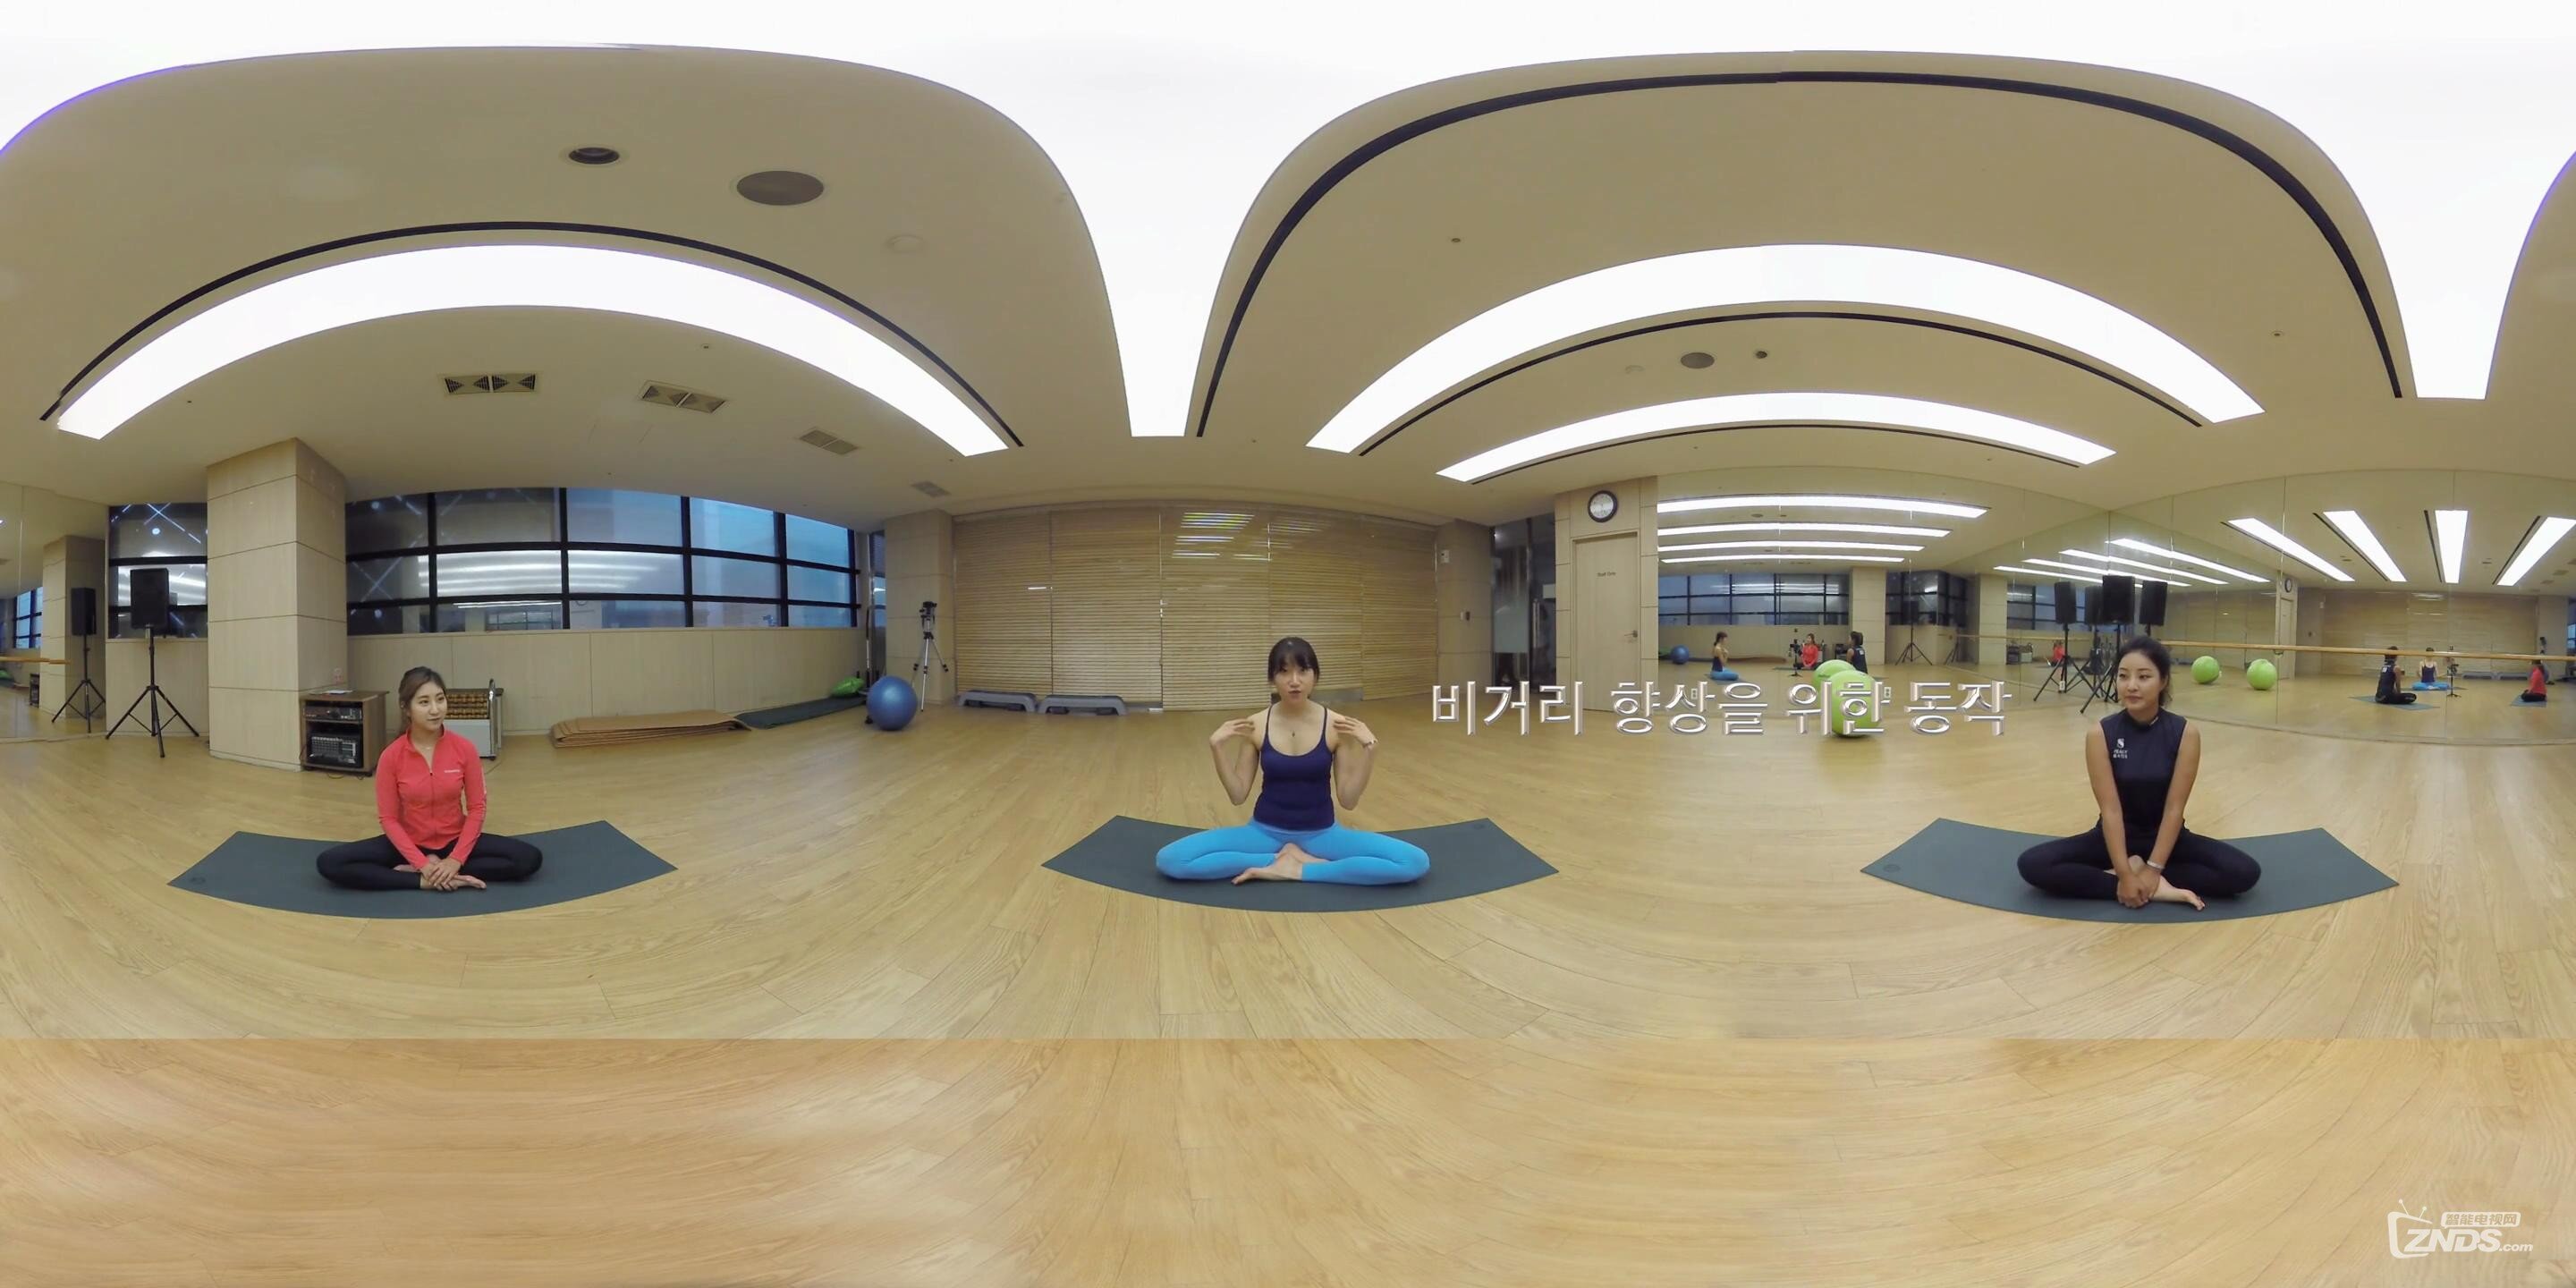 360_VR_全景_虚拟现实_韩国美女瑜伽教练教你瑜伽的正确姿势ep_3_20160923202236.JPG.jpg